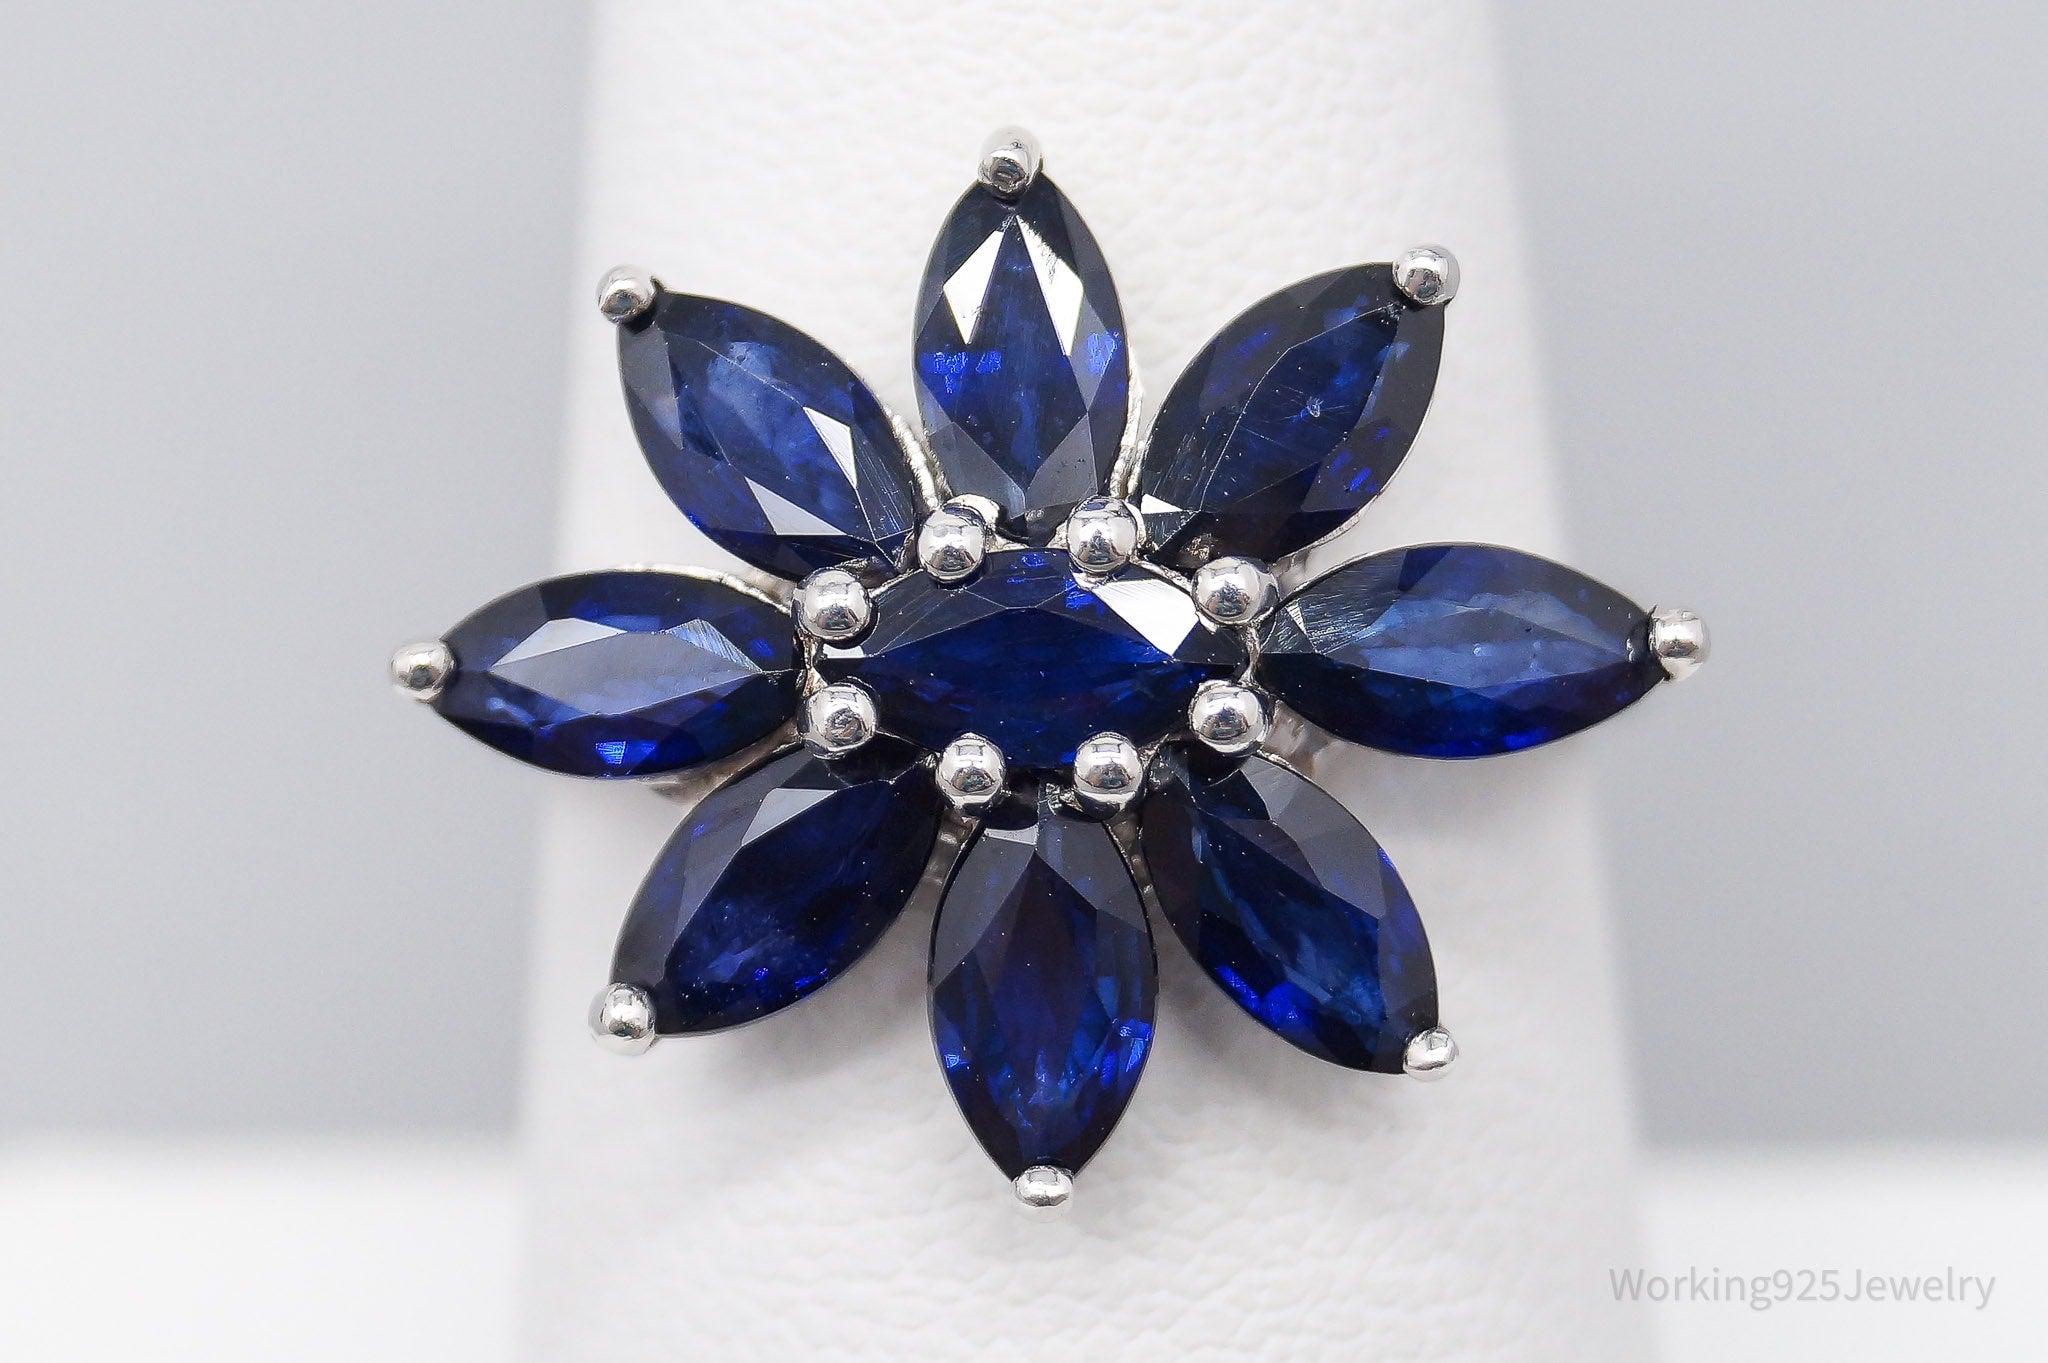 JTV TGGC Blue Sapphire Flower Sterling Silver Ring - Size 7.25